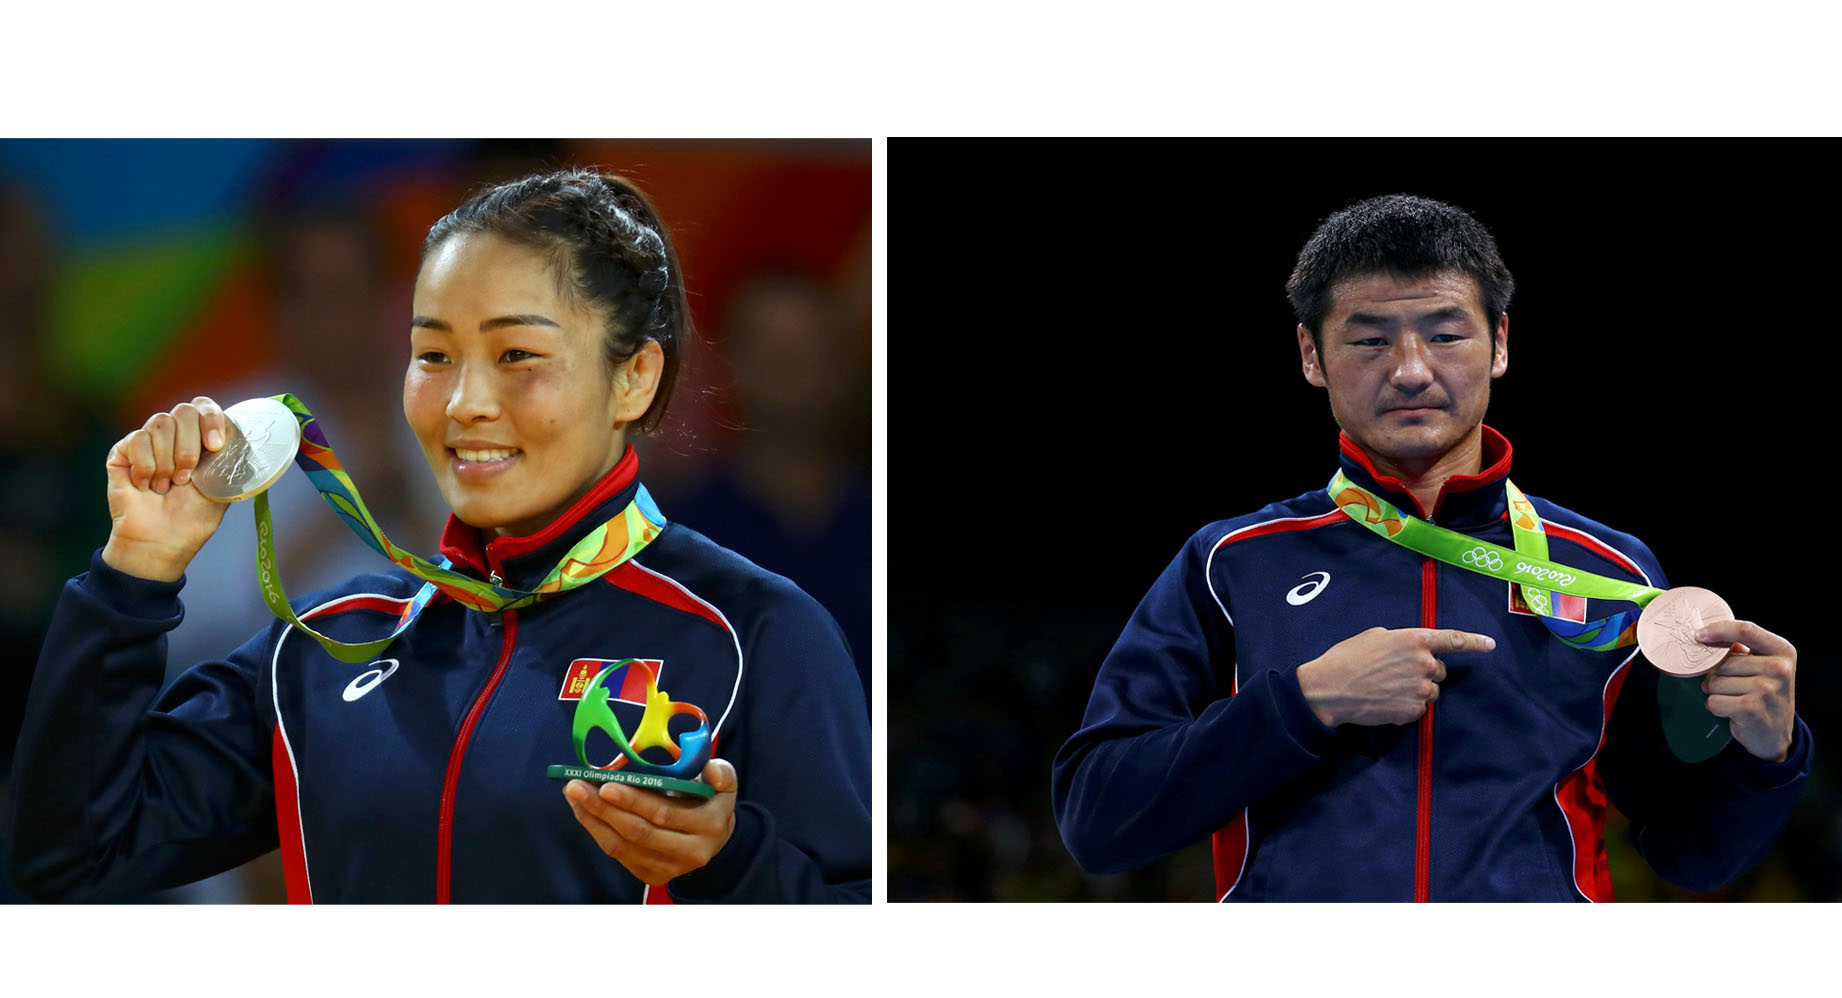 El gobierno de Mongolia premio con una nueva residencia a Sumiya Dorjsuren y a Otgondalai Dorjnyambuu, sus únicos medallistas en los Juegos Olímpicos de Río 2016